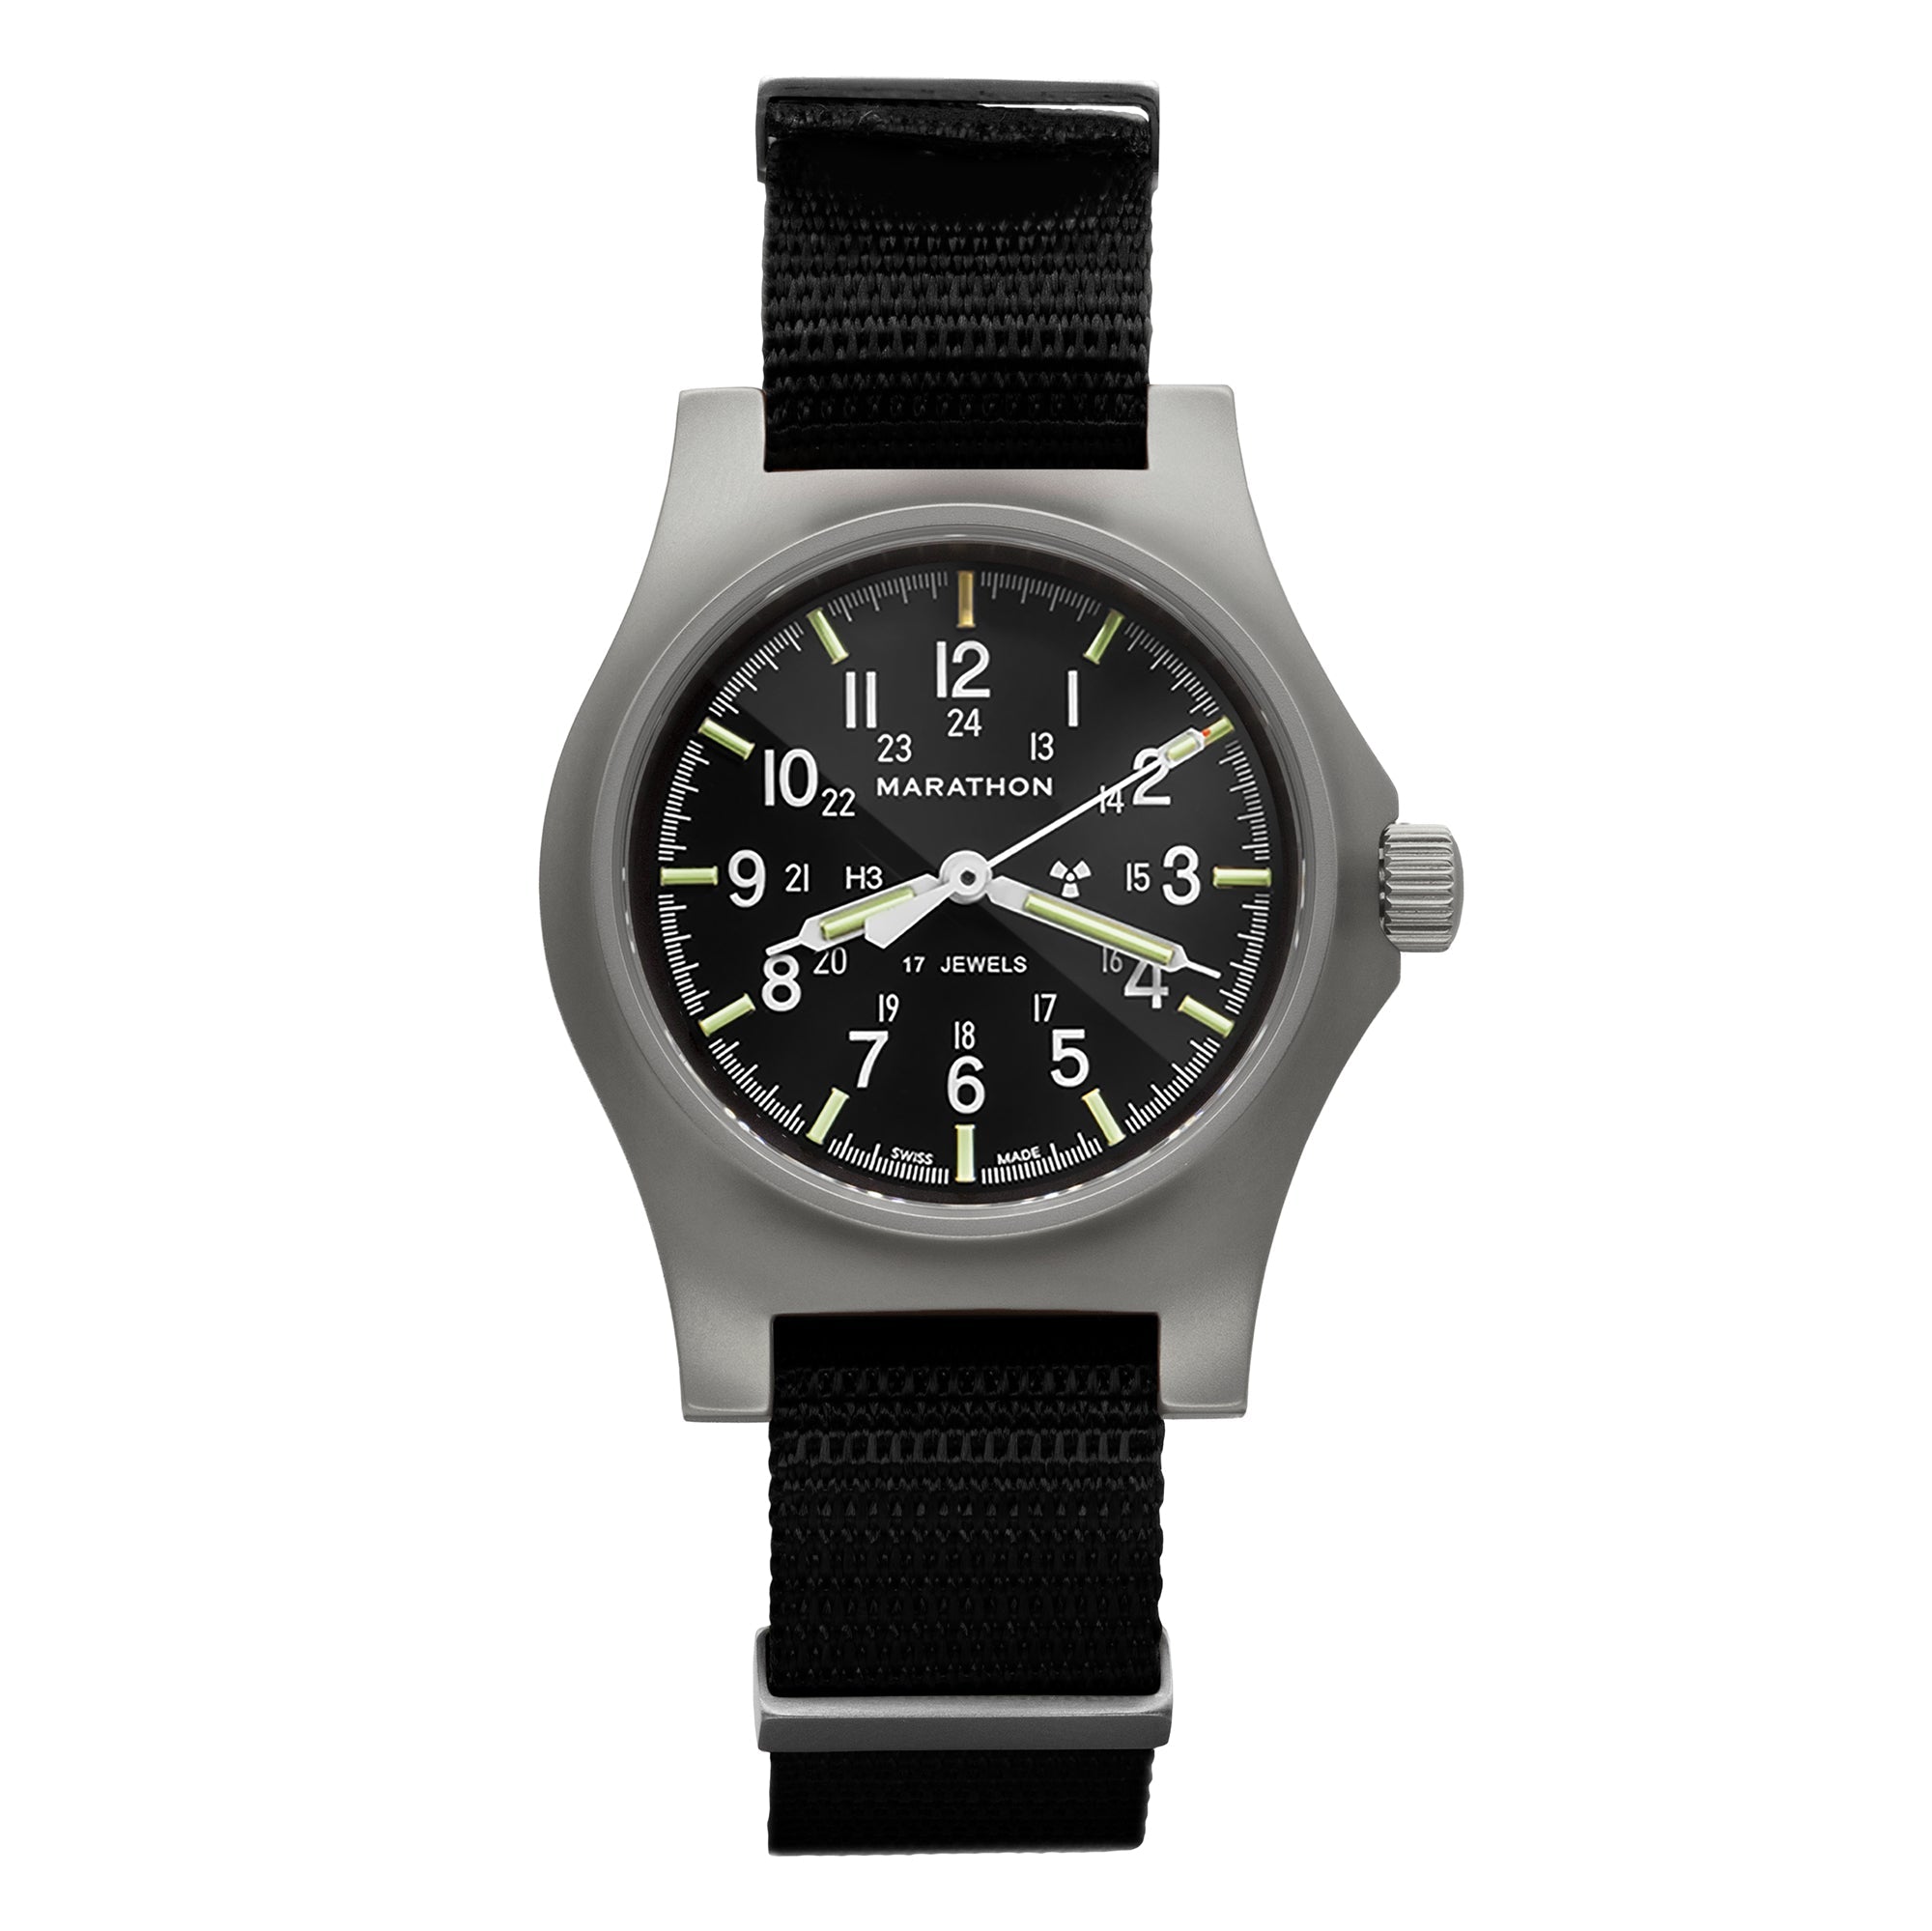 General Purpose Mechanical Watch – Marathon Watch